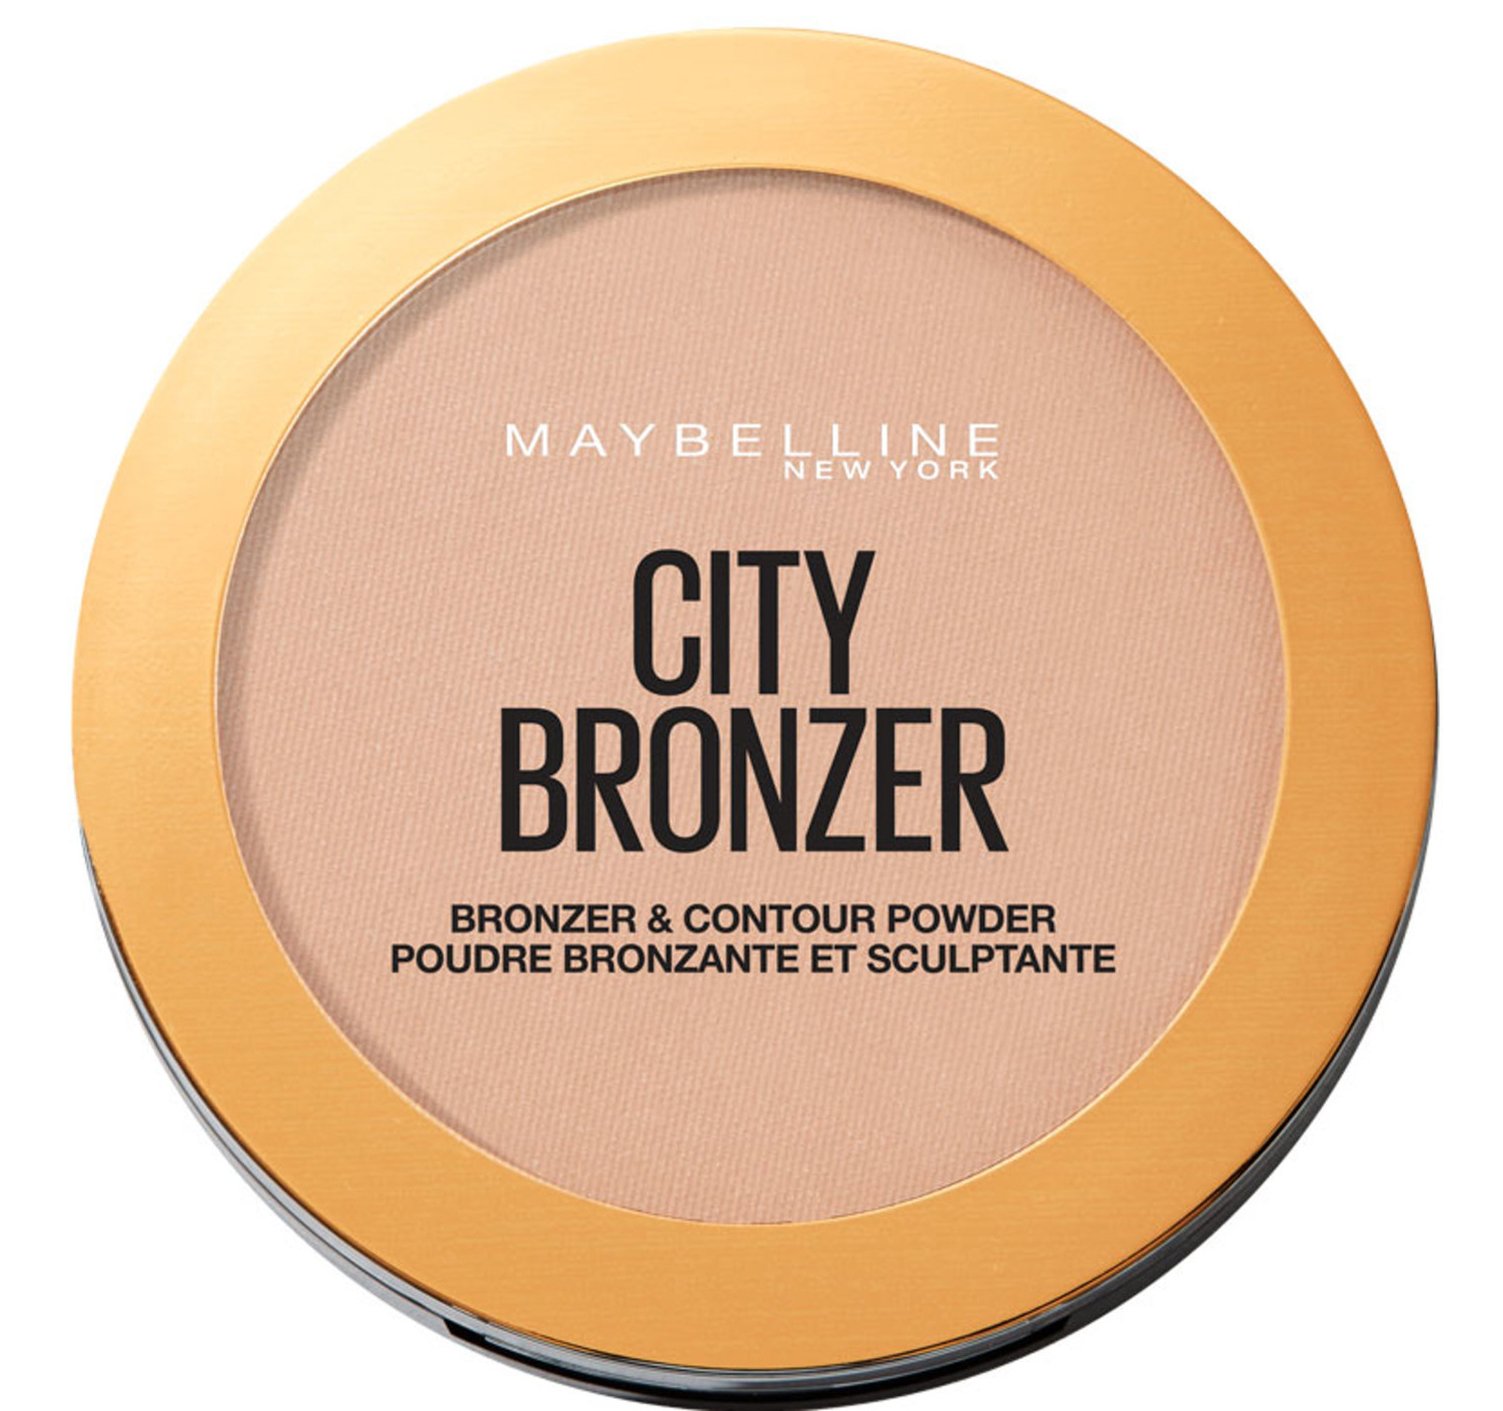 Maybelline City Bronzer - Medium Warm